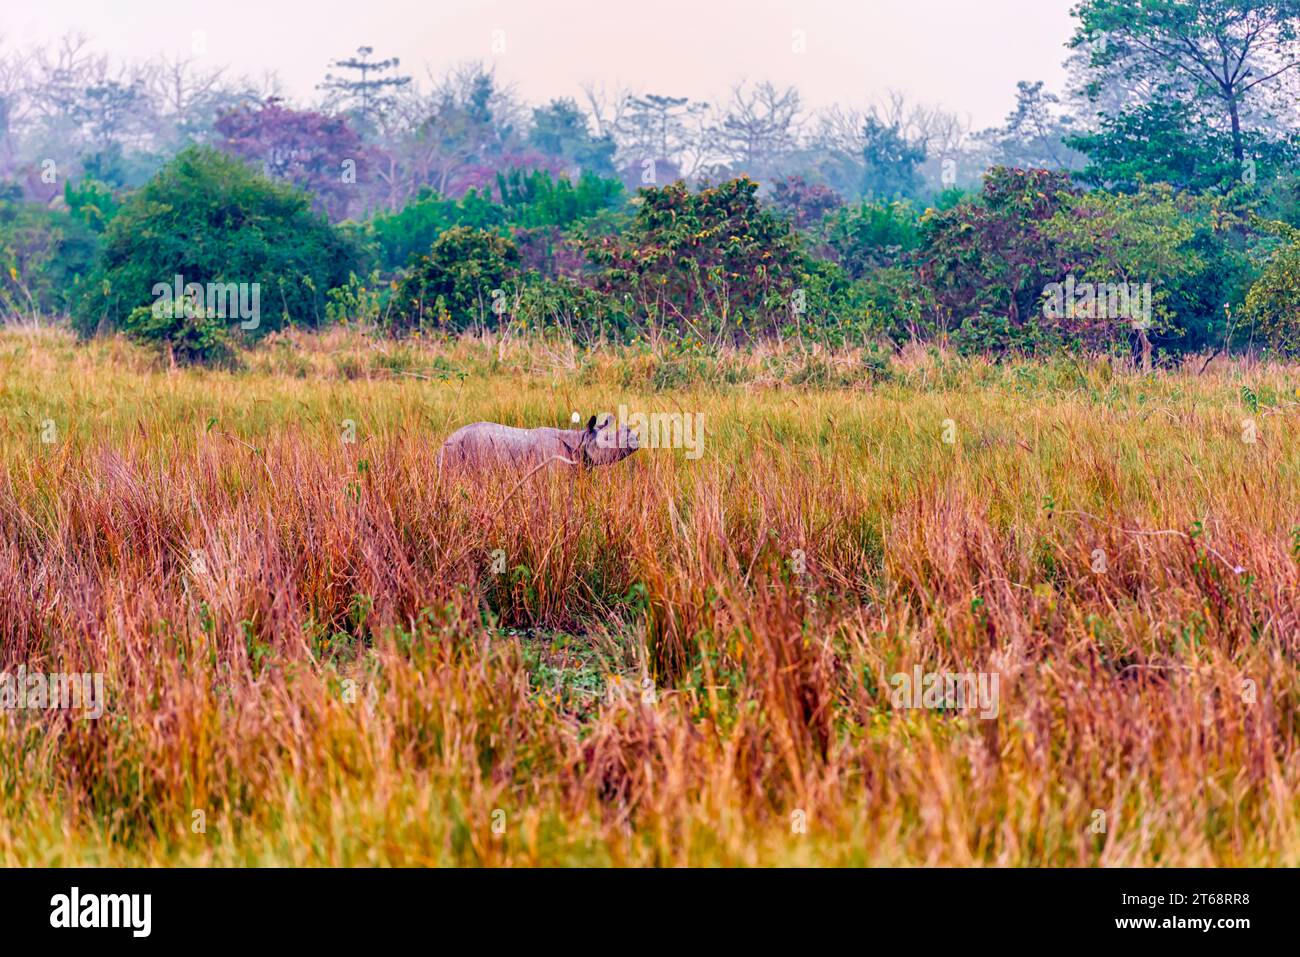 Un grand rhinocéros indien se nourrissant dans une prairie à l'intérieur du sanctuaire de faune de Pobitora à Assam, en Inde. Banque D'Images